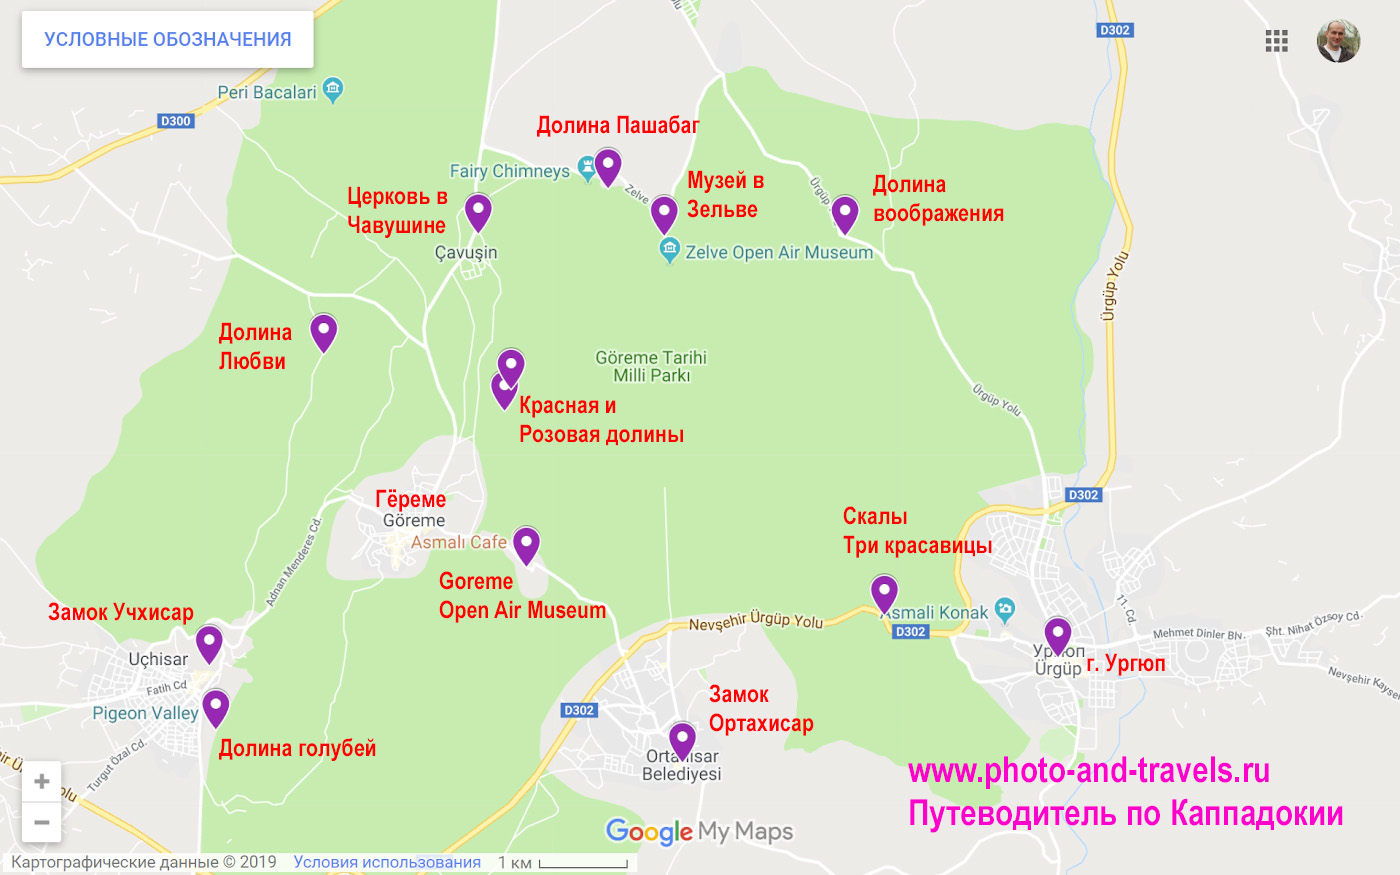 Карта с пояснениями, где находятся интересные места в окрестностях Гёреме.